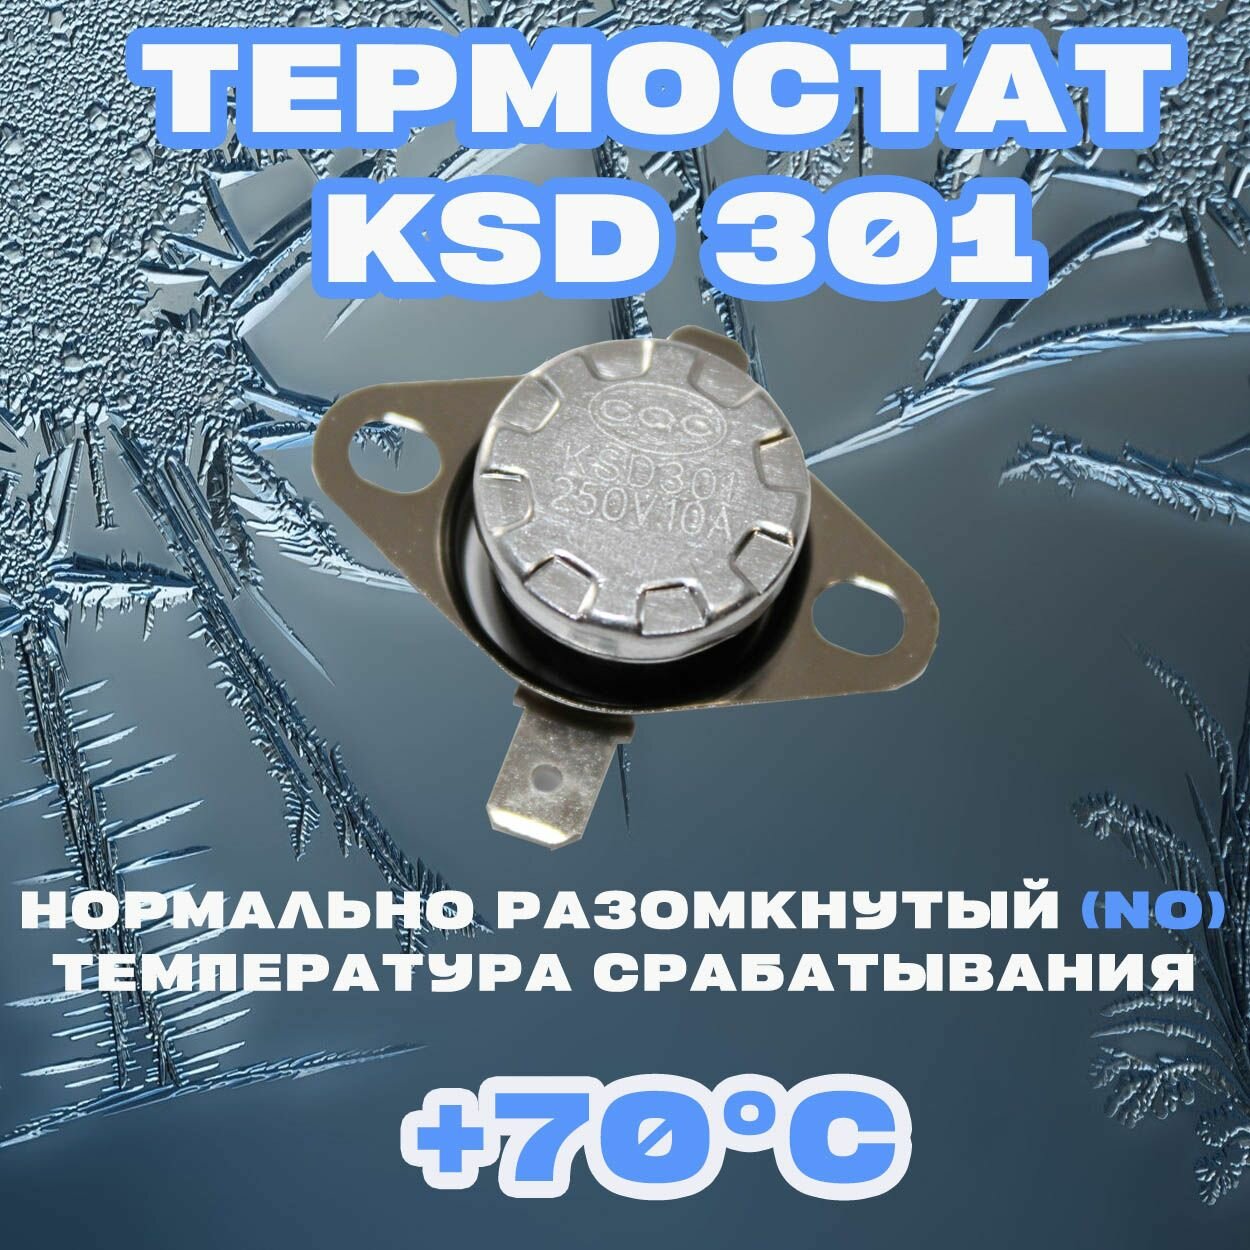 Термостат Нормально разомкнутый (NO) KSD 301 70C 250В 10A Для нагревательного и холодильного оборудования